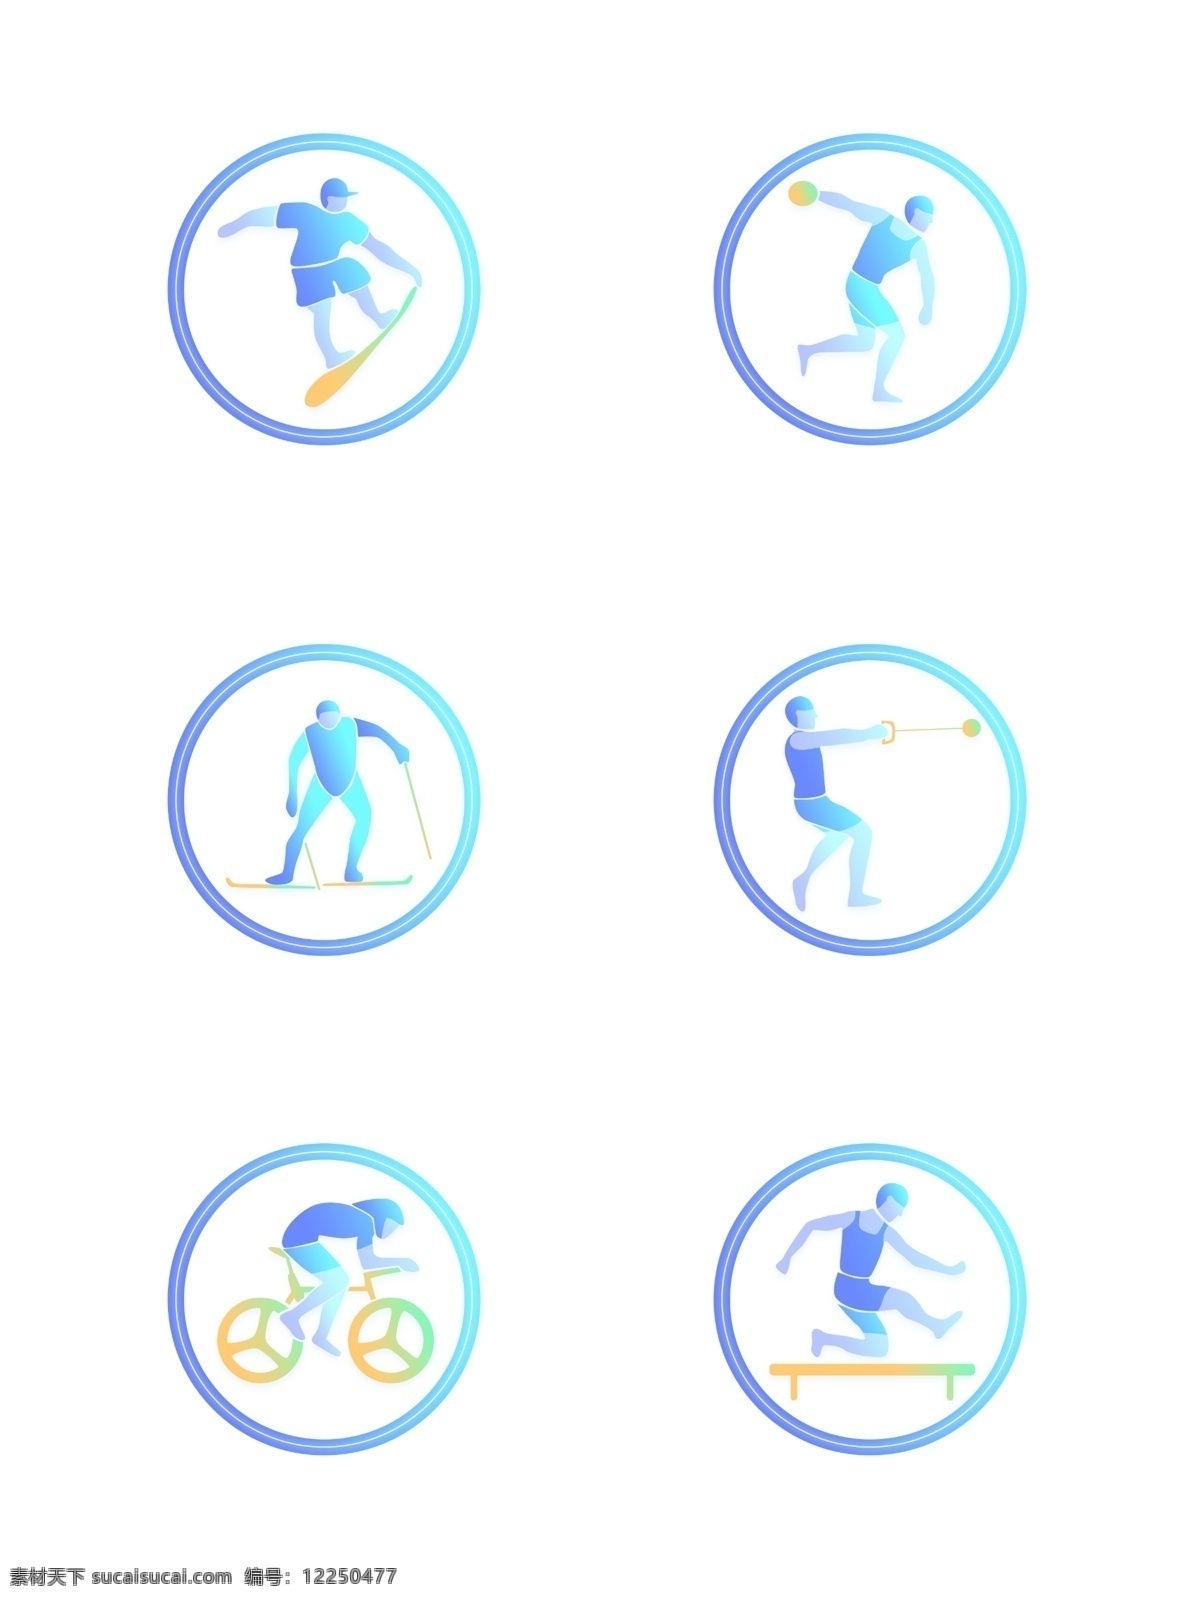 双色 渐变 体育 竞技 运动 人物 图标 元素 套 图 自行车 小人 田径 滑板 铁饼 滑雪 链球 越野 跨栏